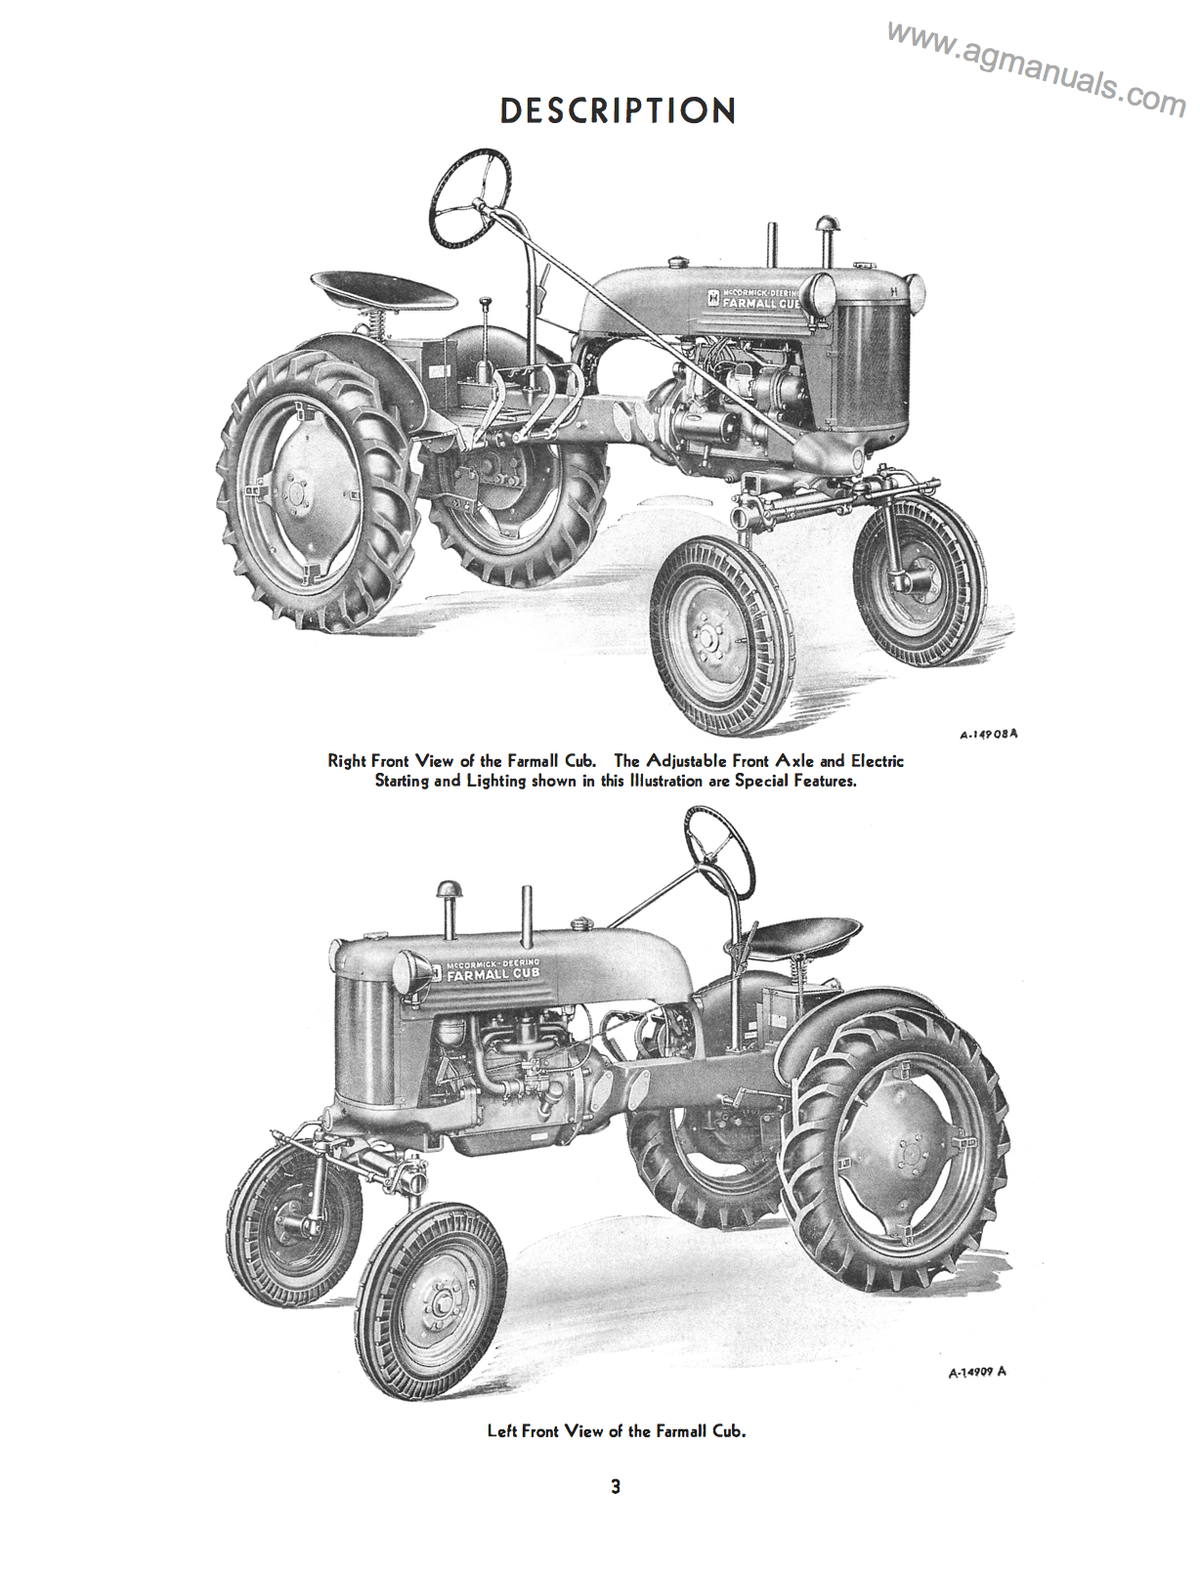 McCormick Farmall and International Cub Tractors - Owner's Manual - Ag Manuals - A Provider of Digital Farm Manuals - 2